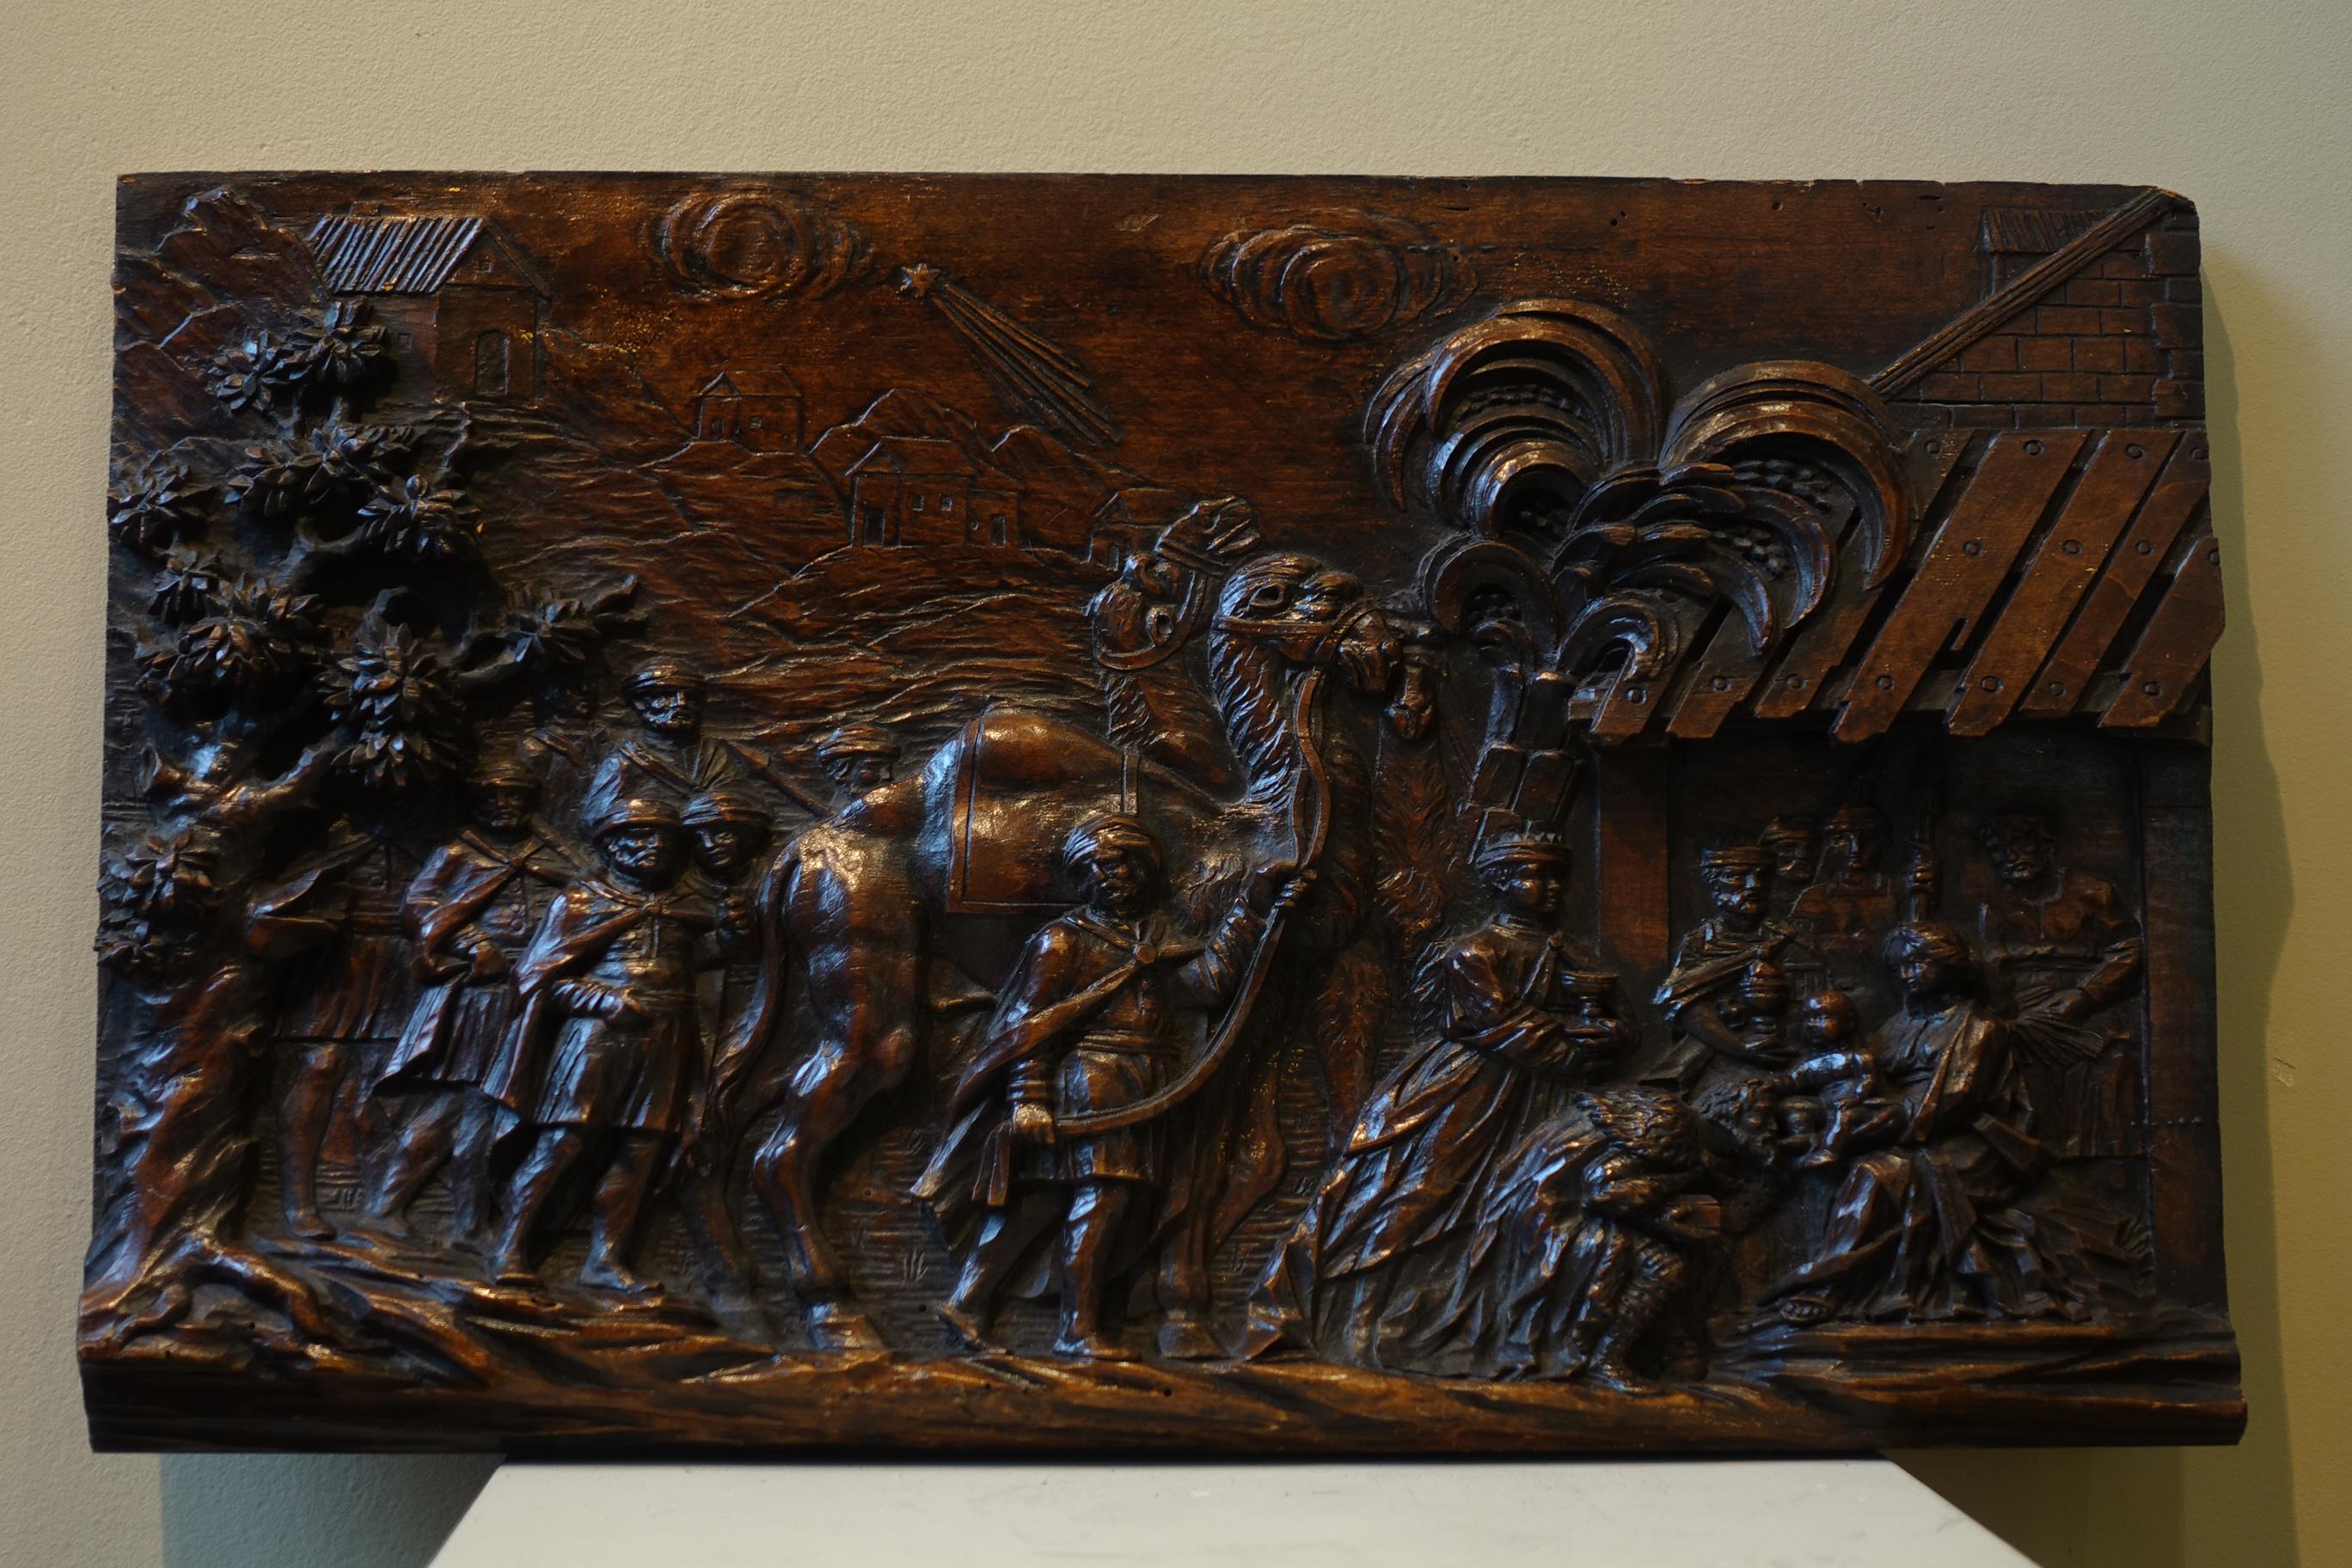 Die Anbetung der Heiligen Drei Könige.
In Hochrelief geschnitzte Tafel.
Flandern, 17. Jahrhundert.
Maße: 53 x 32,5 cm.